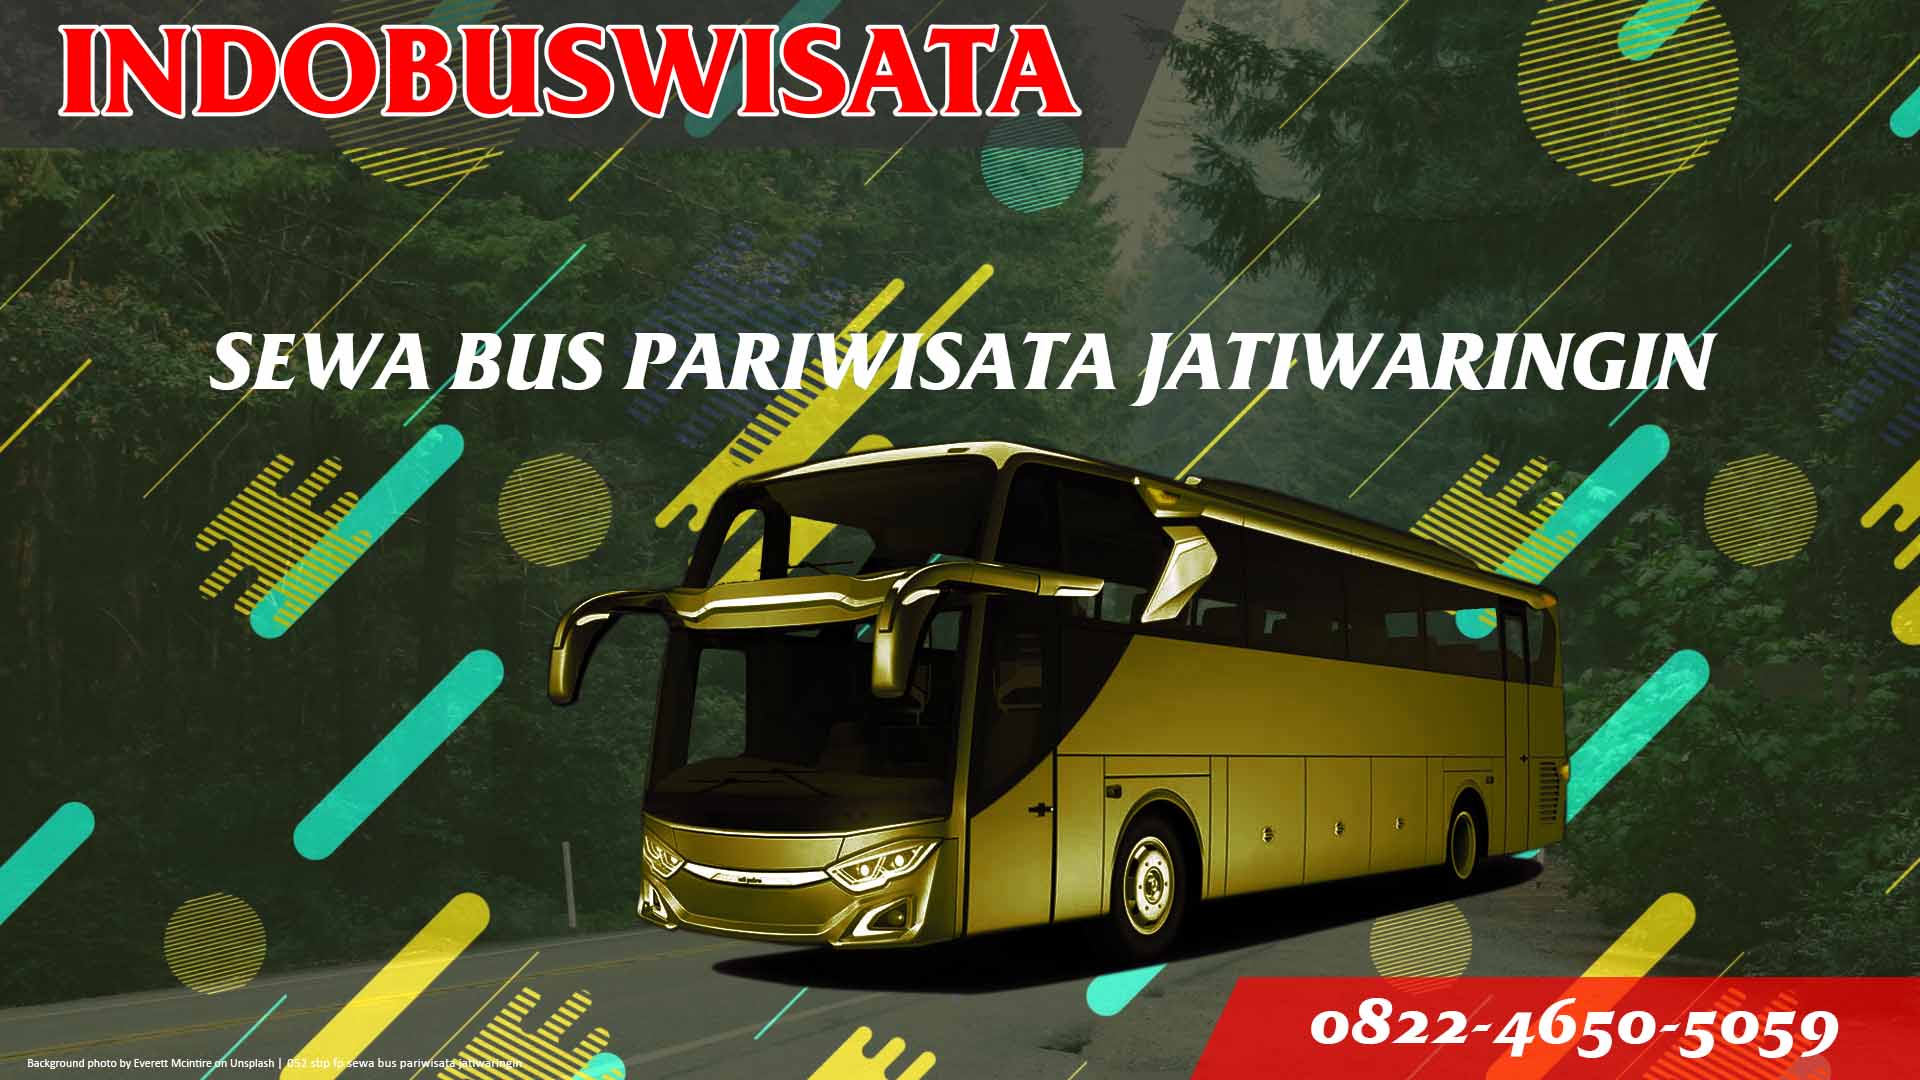 052 Sbp Fp Sewa Bus Pariwisata Jatiwaringin Indobuswisata